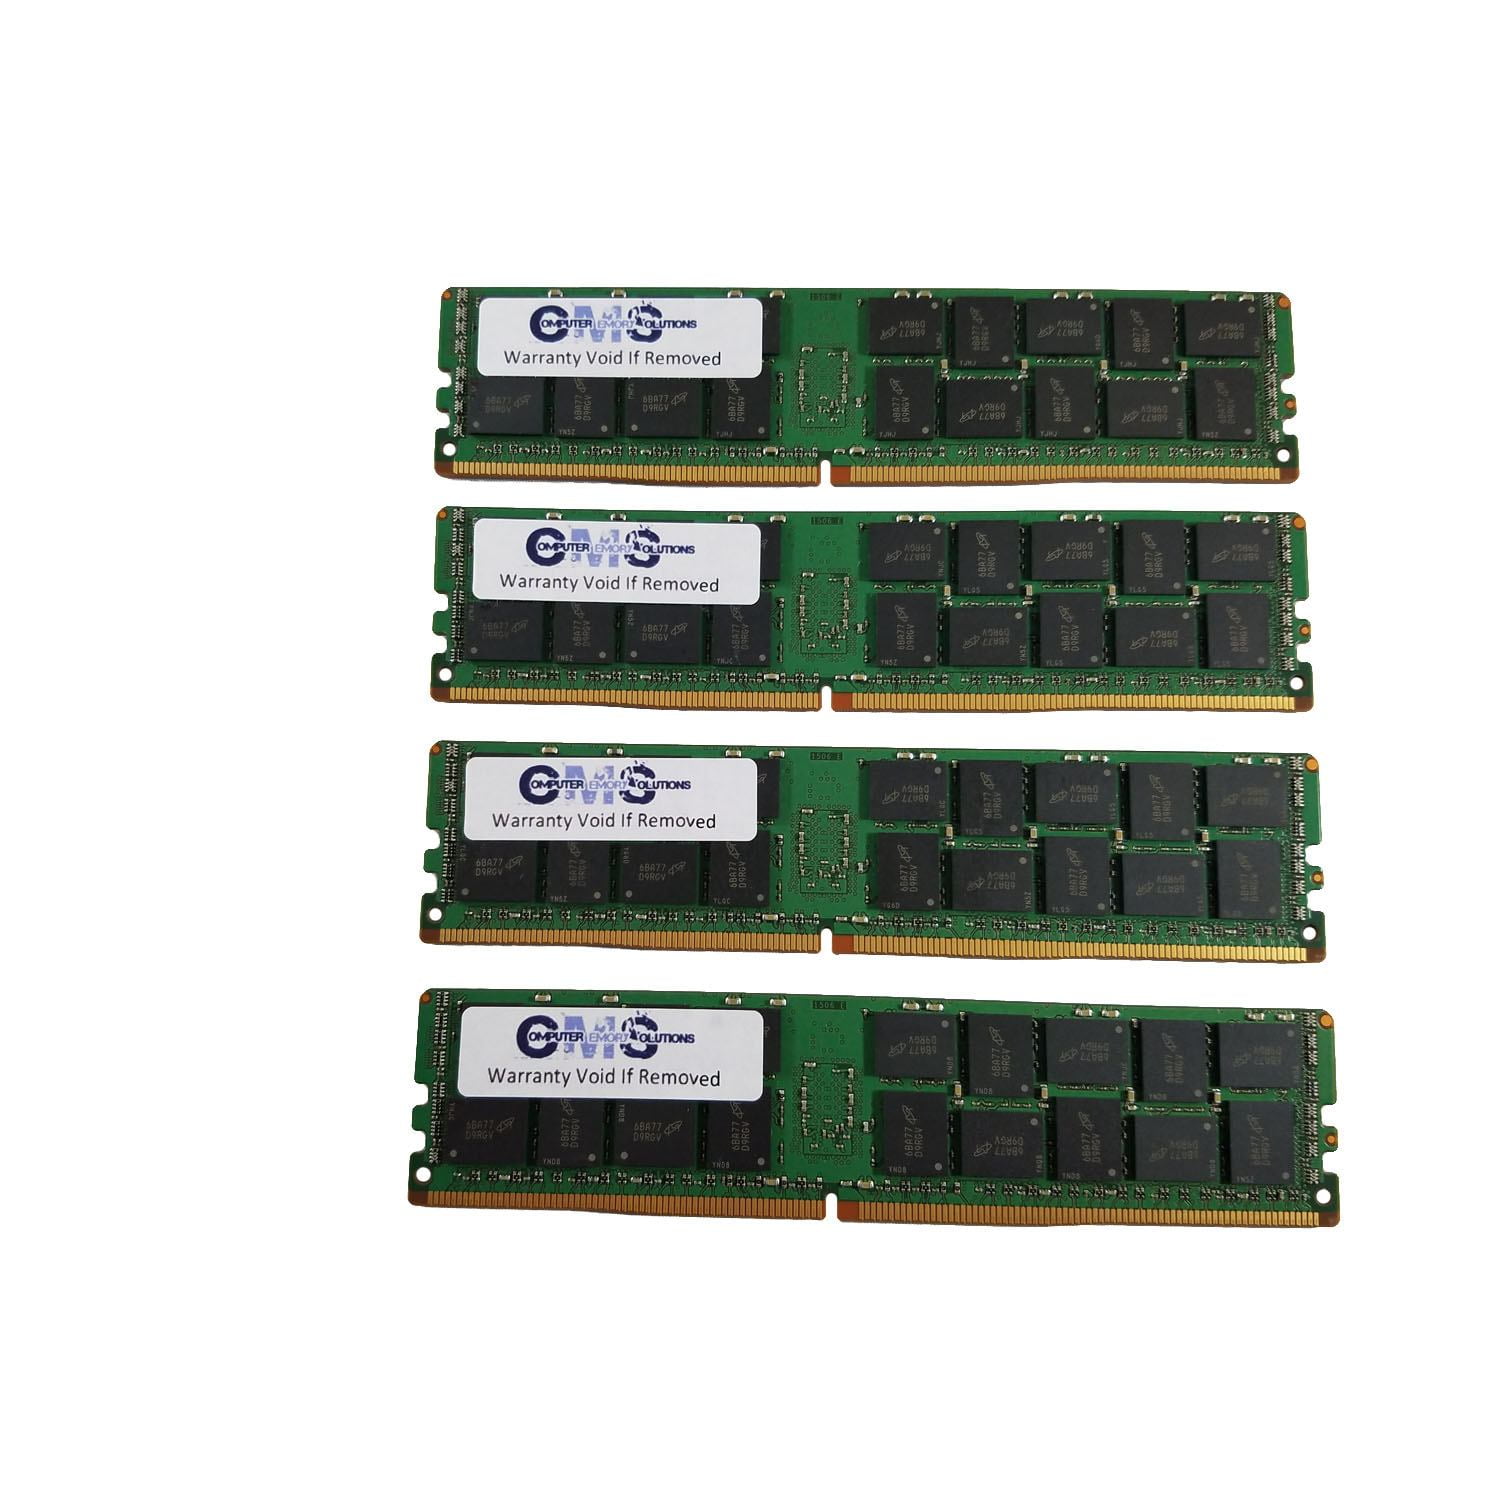 C105 GB-BNi5HG6-1060 Memory Ram Compatible with Gigabyte BRIX GB-BNi5G4-1050Ti 1X4GB GB-BNi5HG4-1050Ti CMS 4GB 